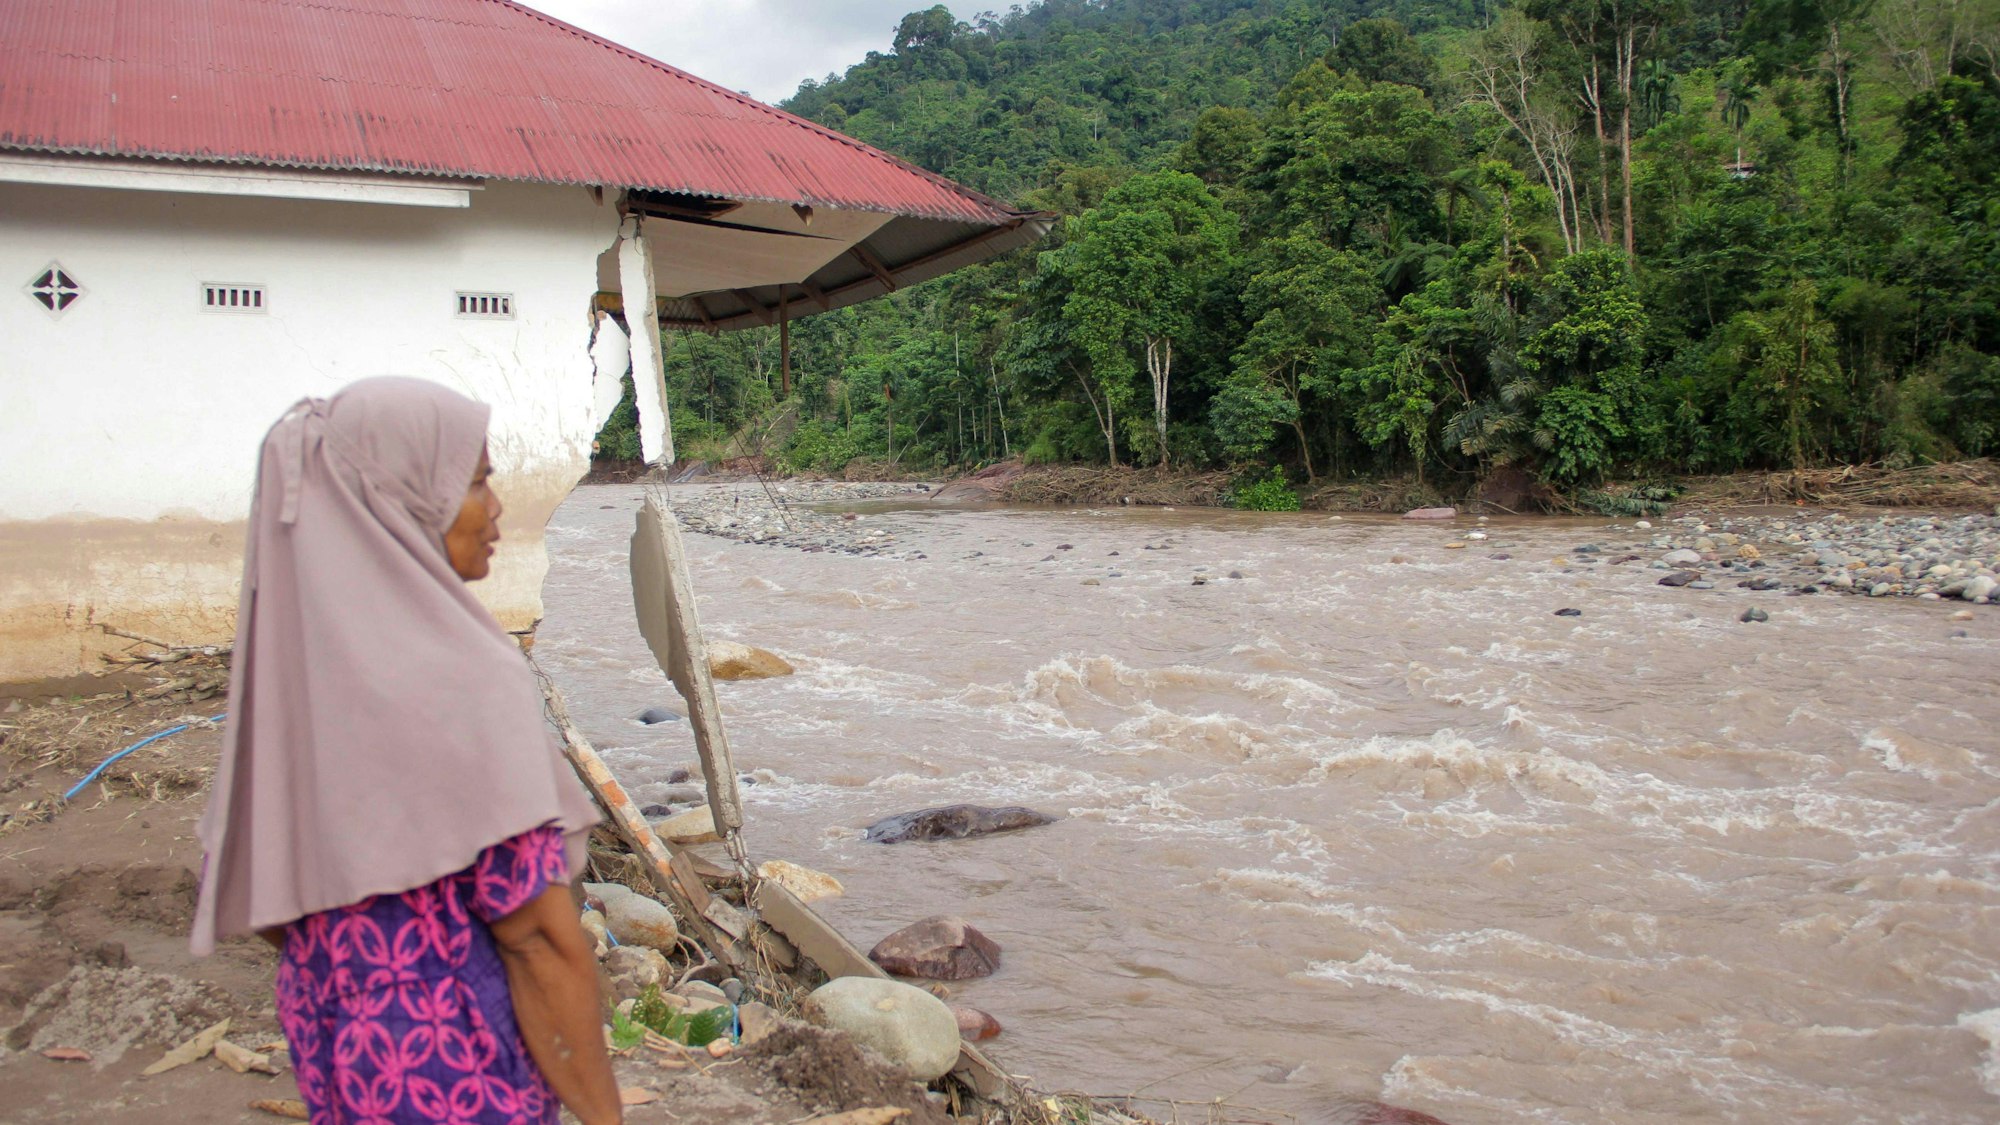 Eine Frau steht bei einem beschädigten Haus, von dem ein überfluteter Fluss große Stücke herausgebrochen hat.